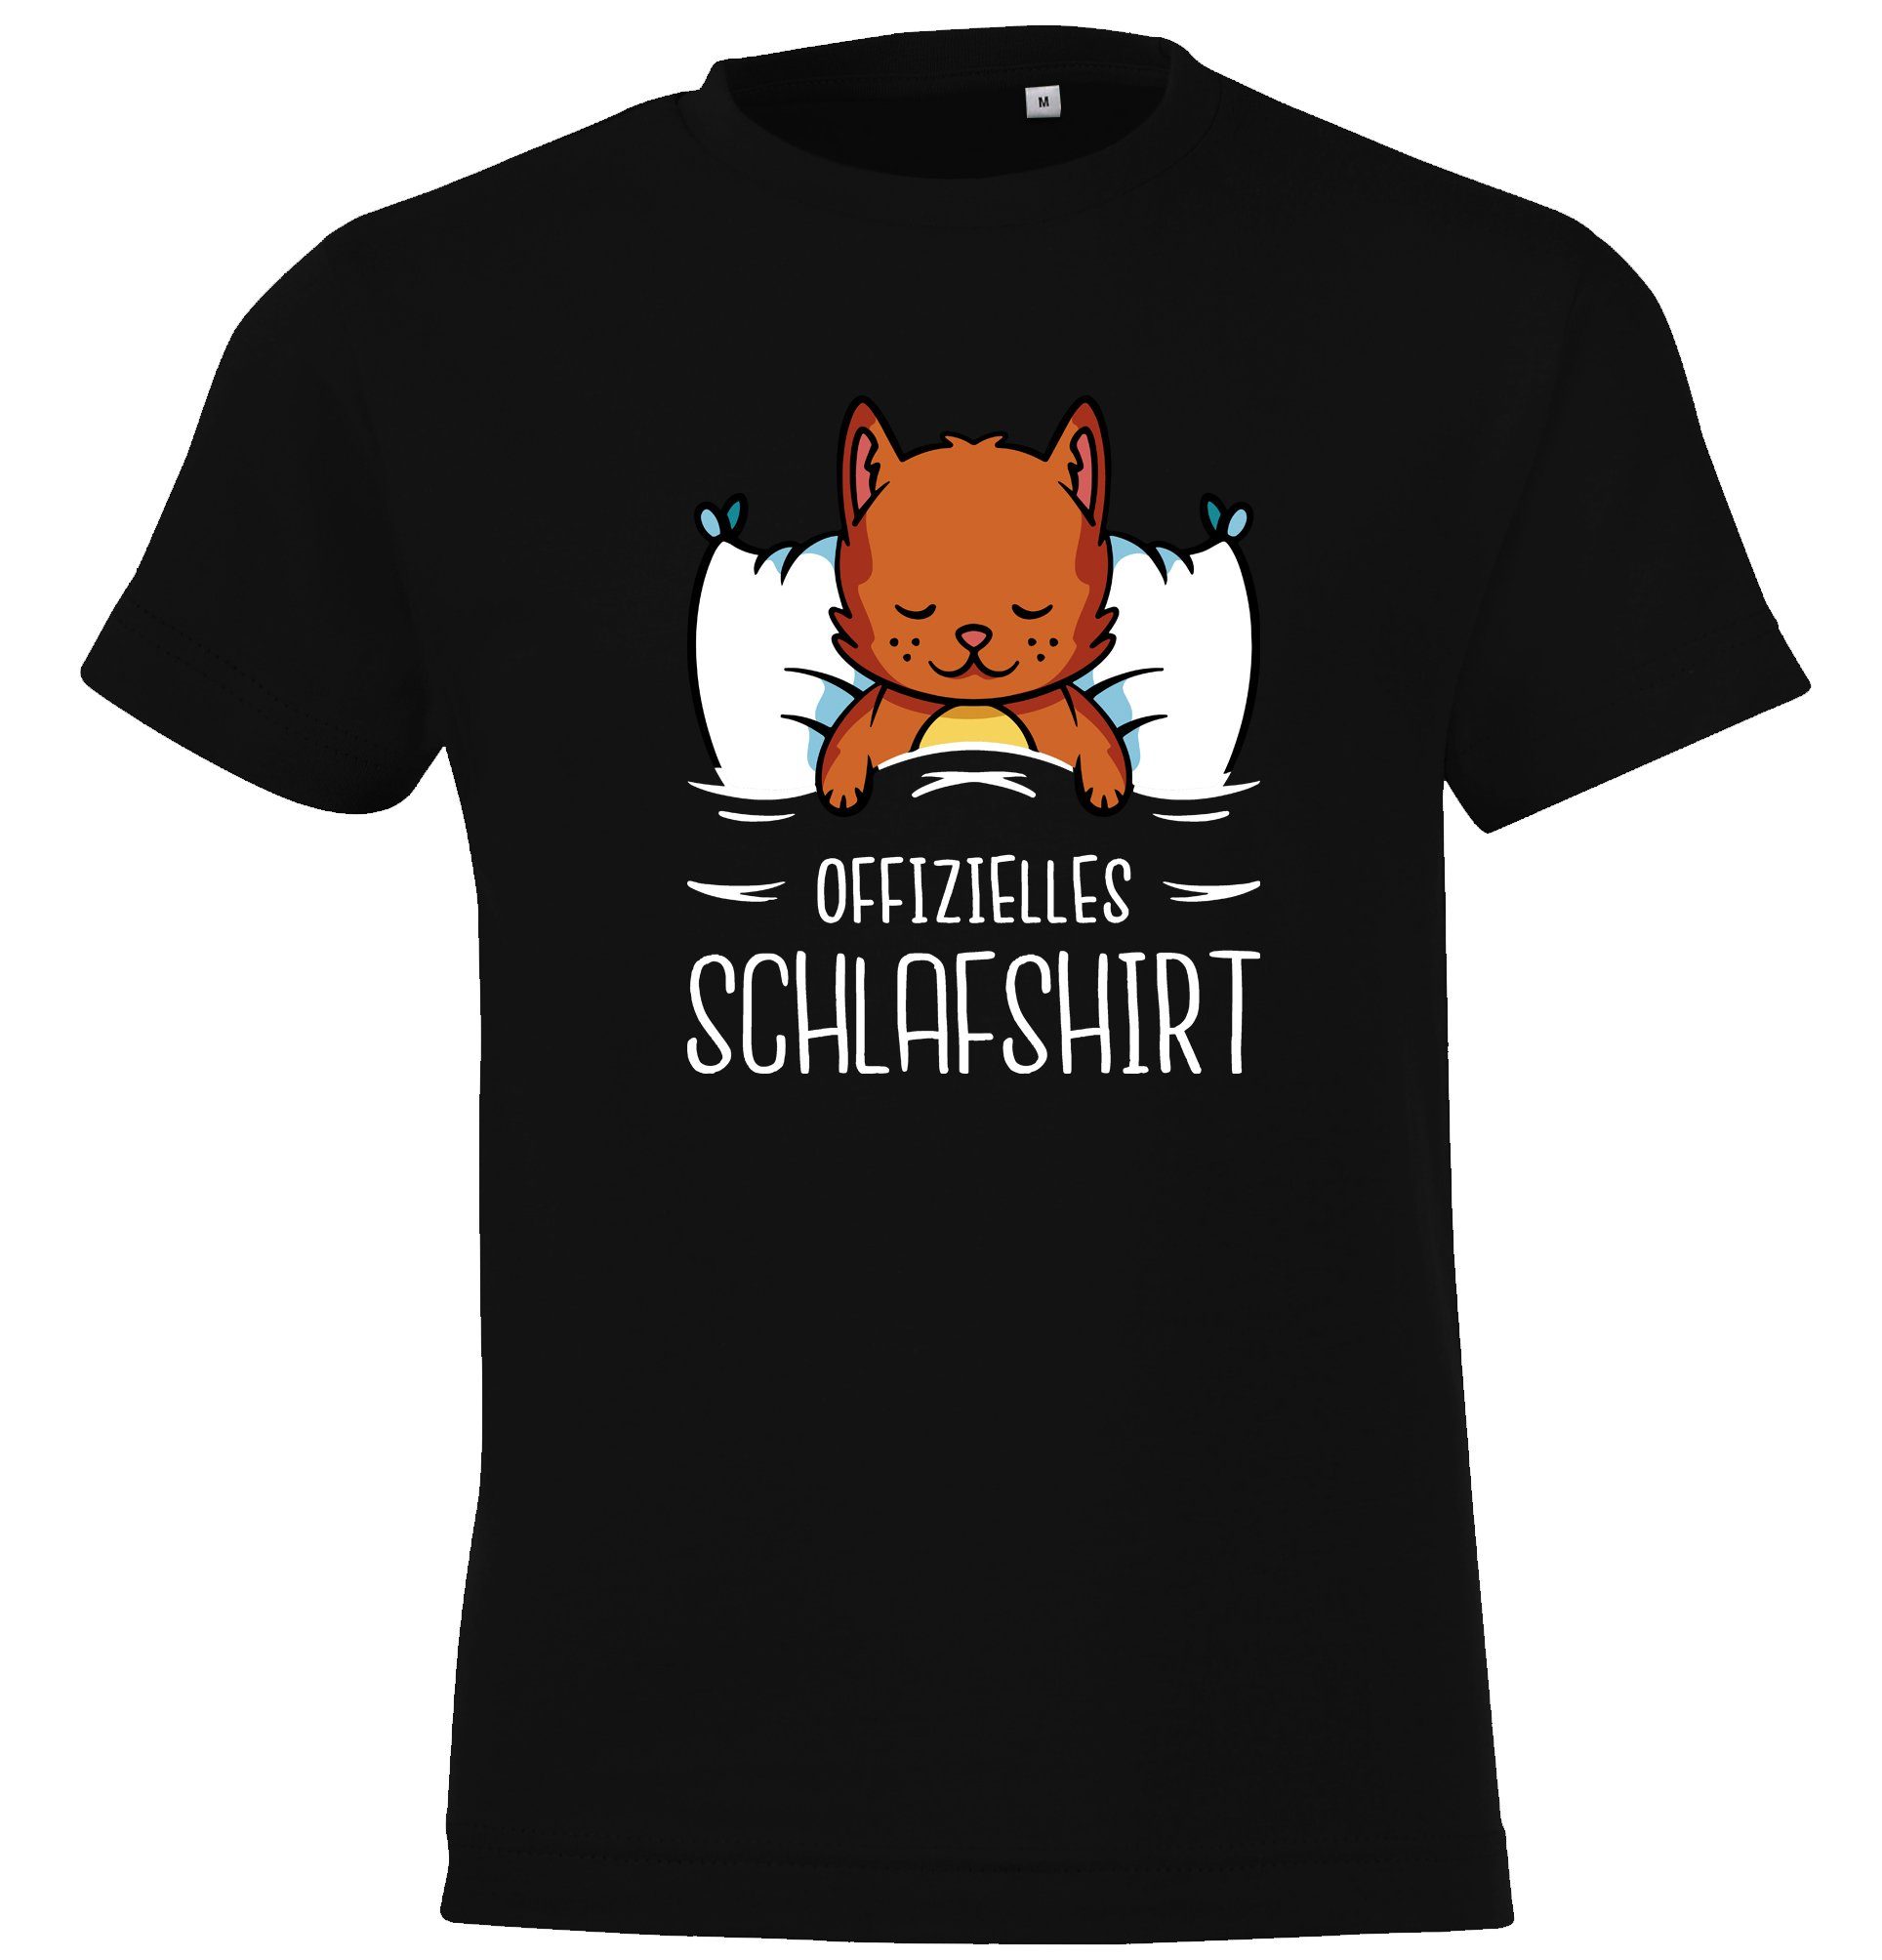 Youth Designz T-Shirt Offizielles Schlafshirt mit Katze Kinder Shirt für Jungen und Mädchen mit lustigem Frontprint Schwarz